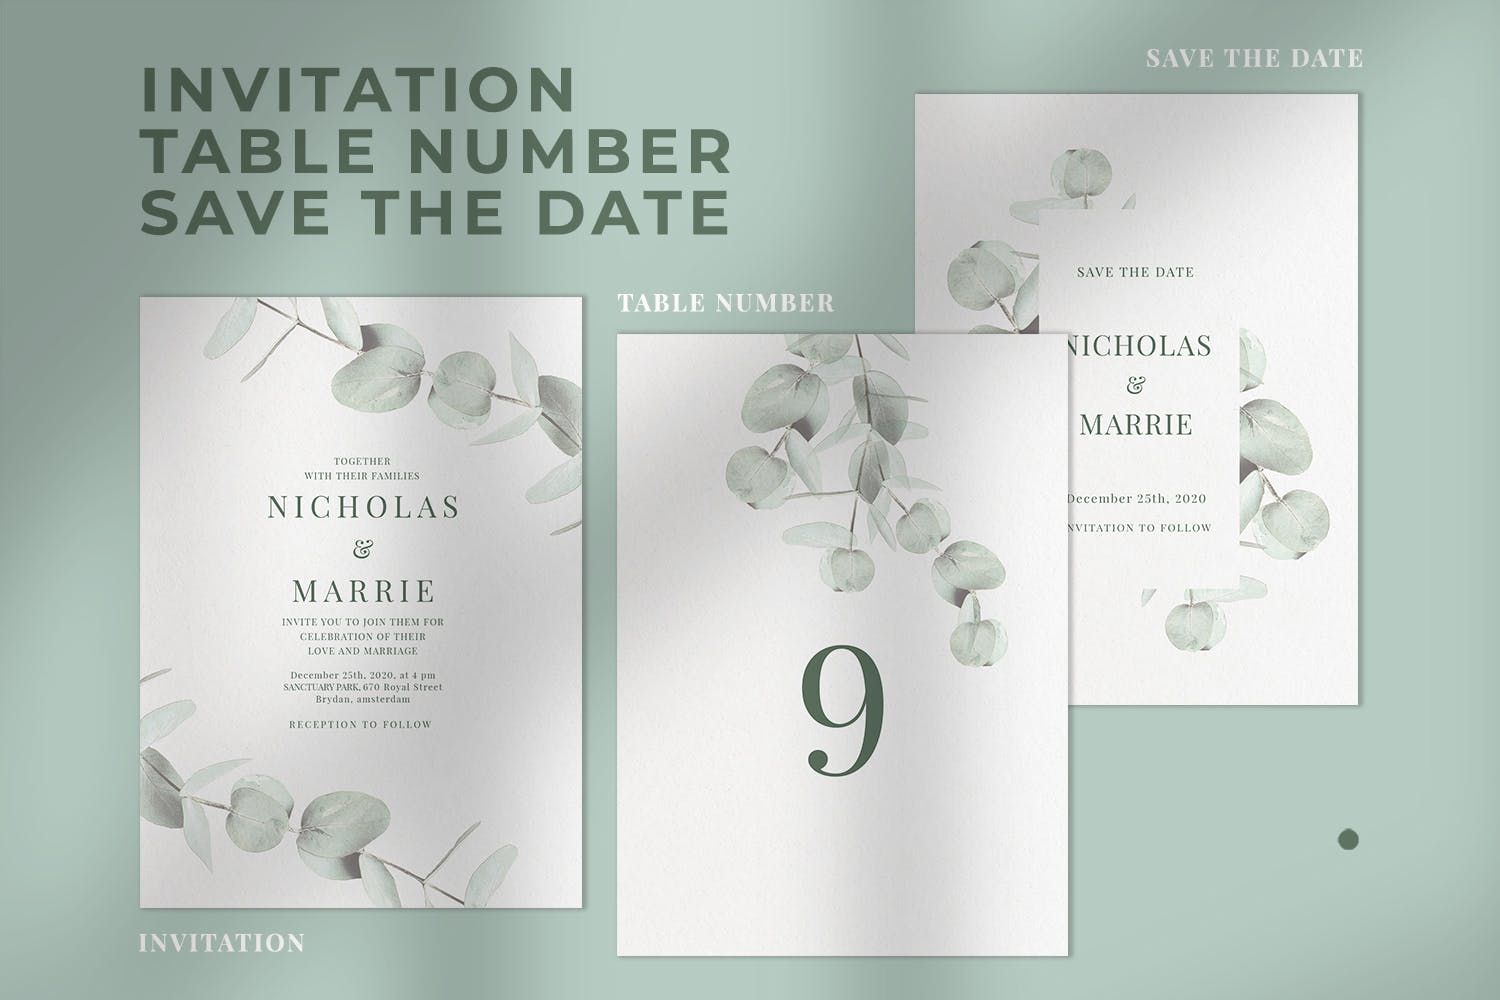 桉树装饰元素婚礼邀请设计素材包 Eucalyptus Wedding Invitation Suite插图(2)